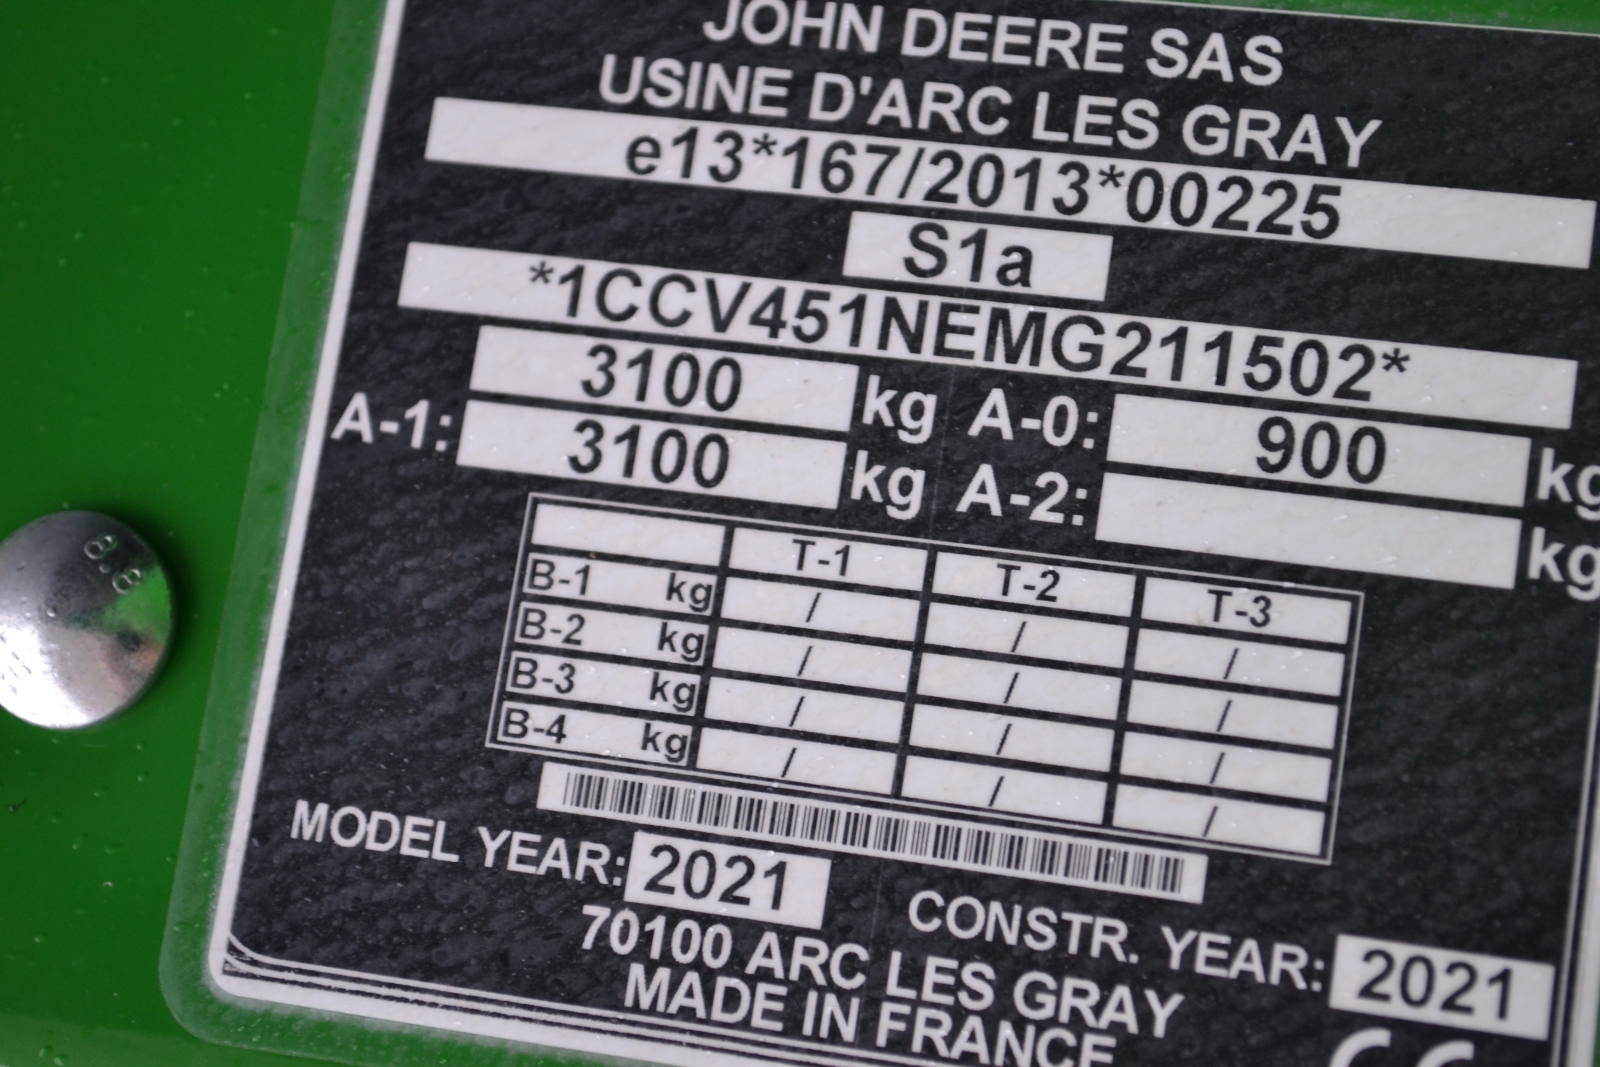 Új John Deere V451G bálázó